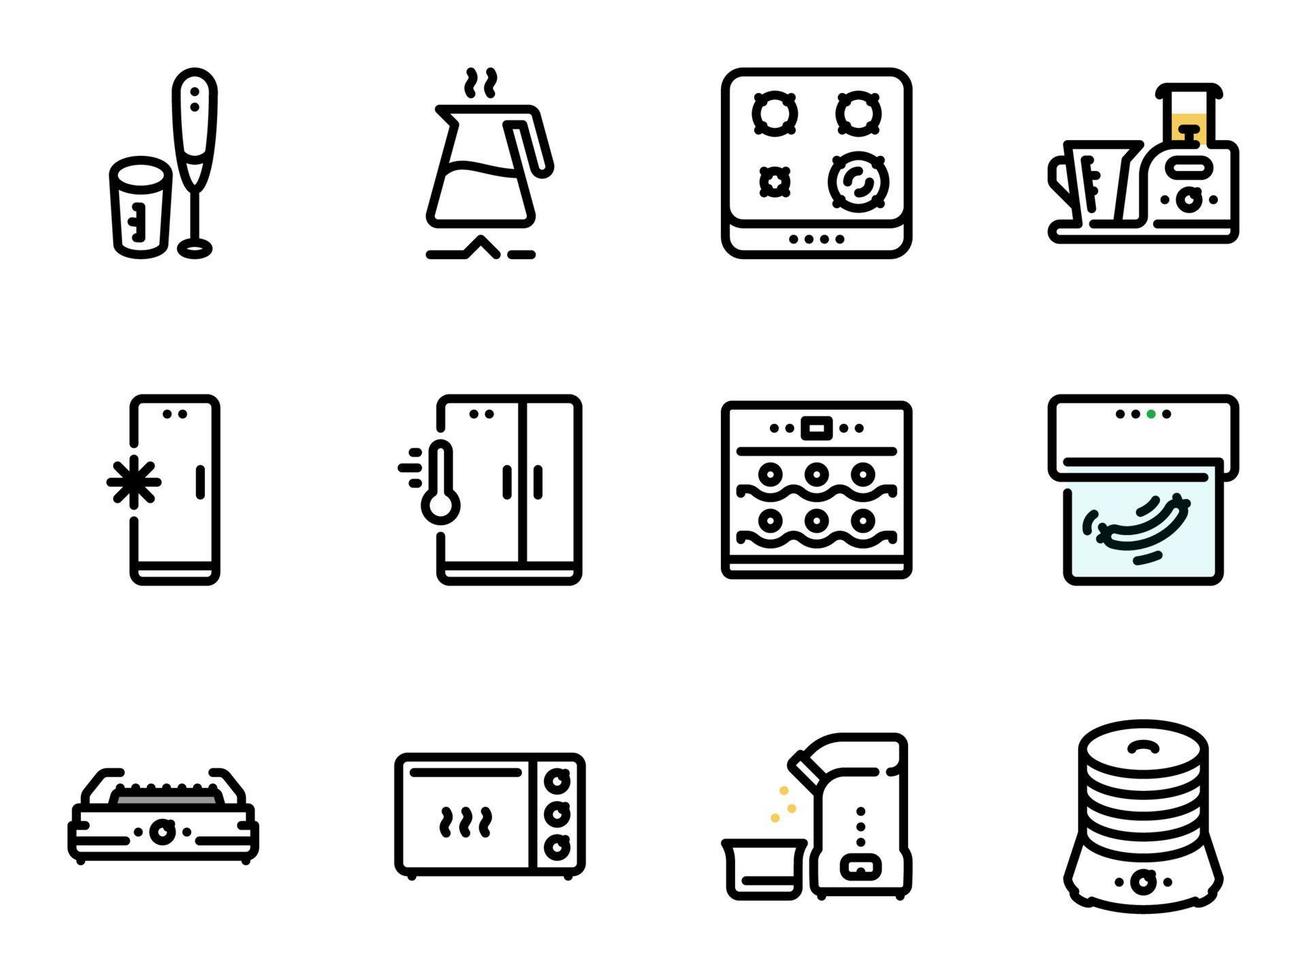 conjunto de ícones do vetor preto, isolados contra um fundo branco. ilustração em um tema utensílios de cozinha